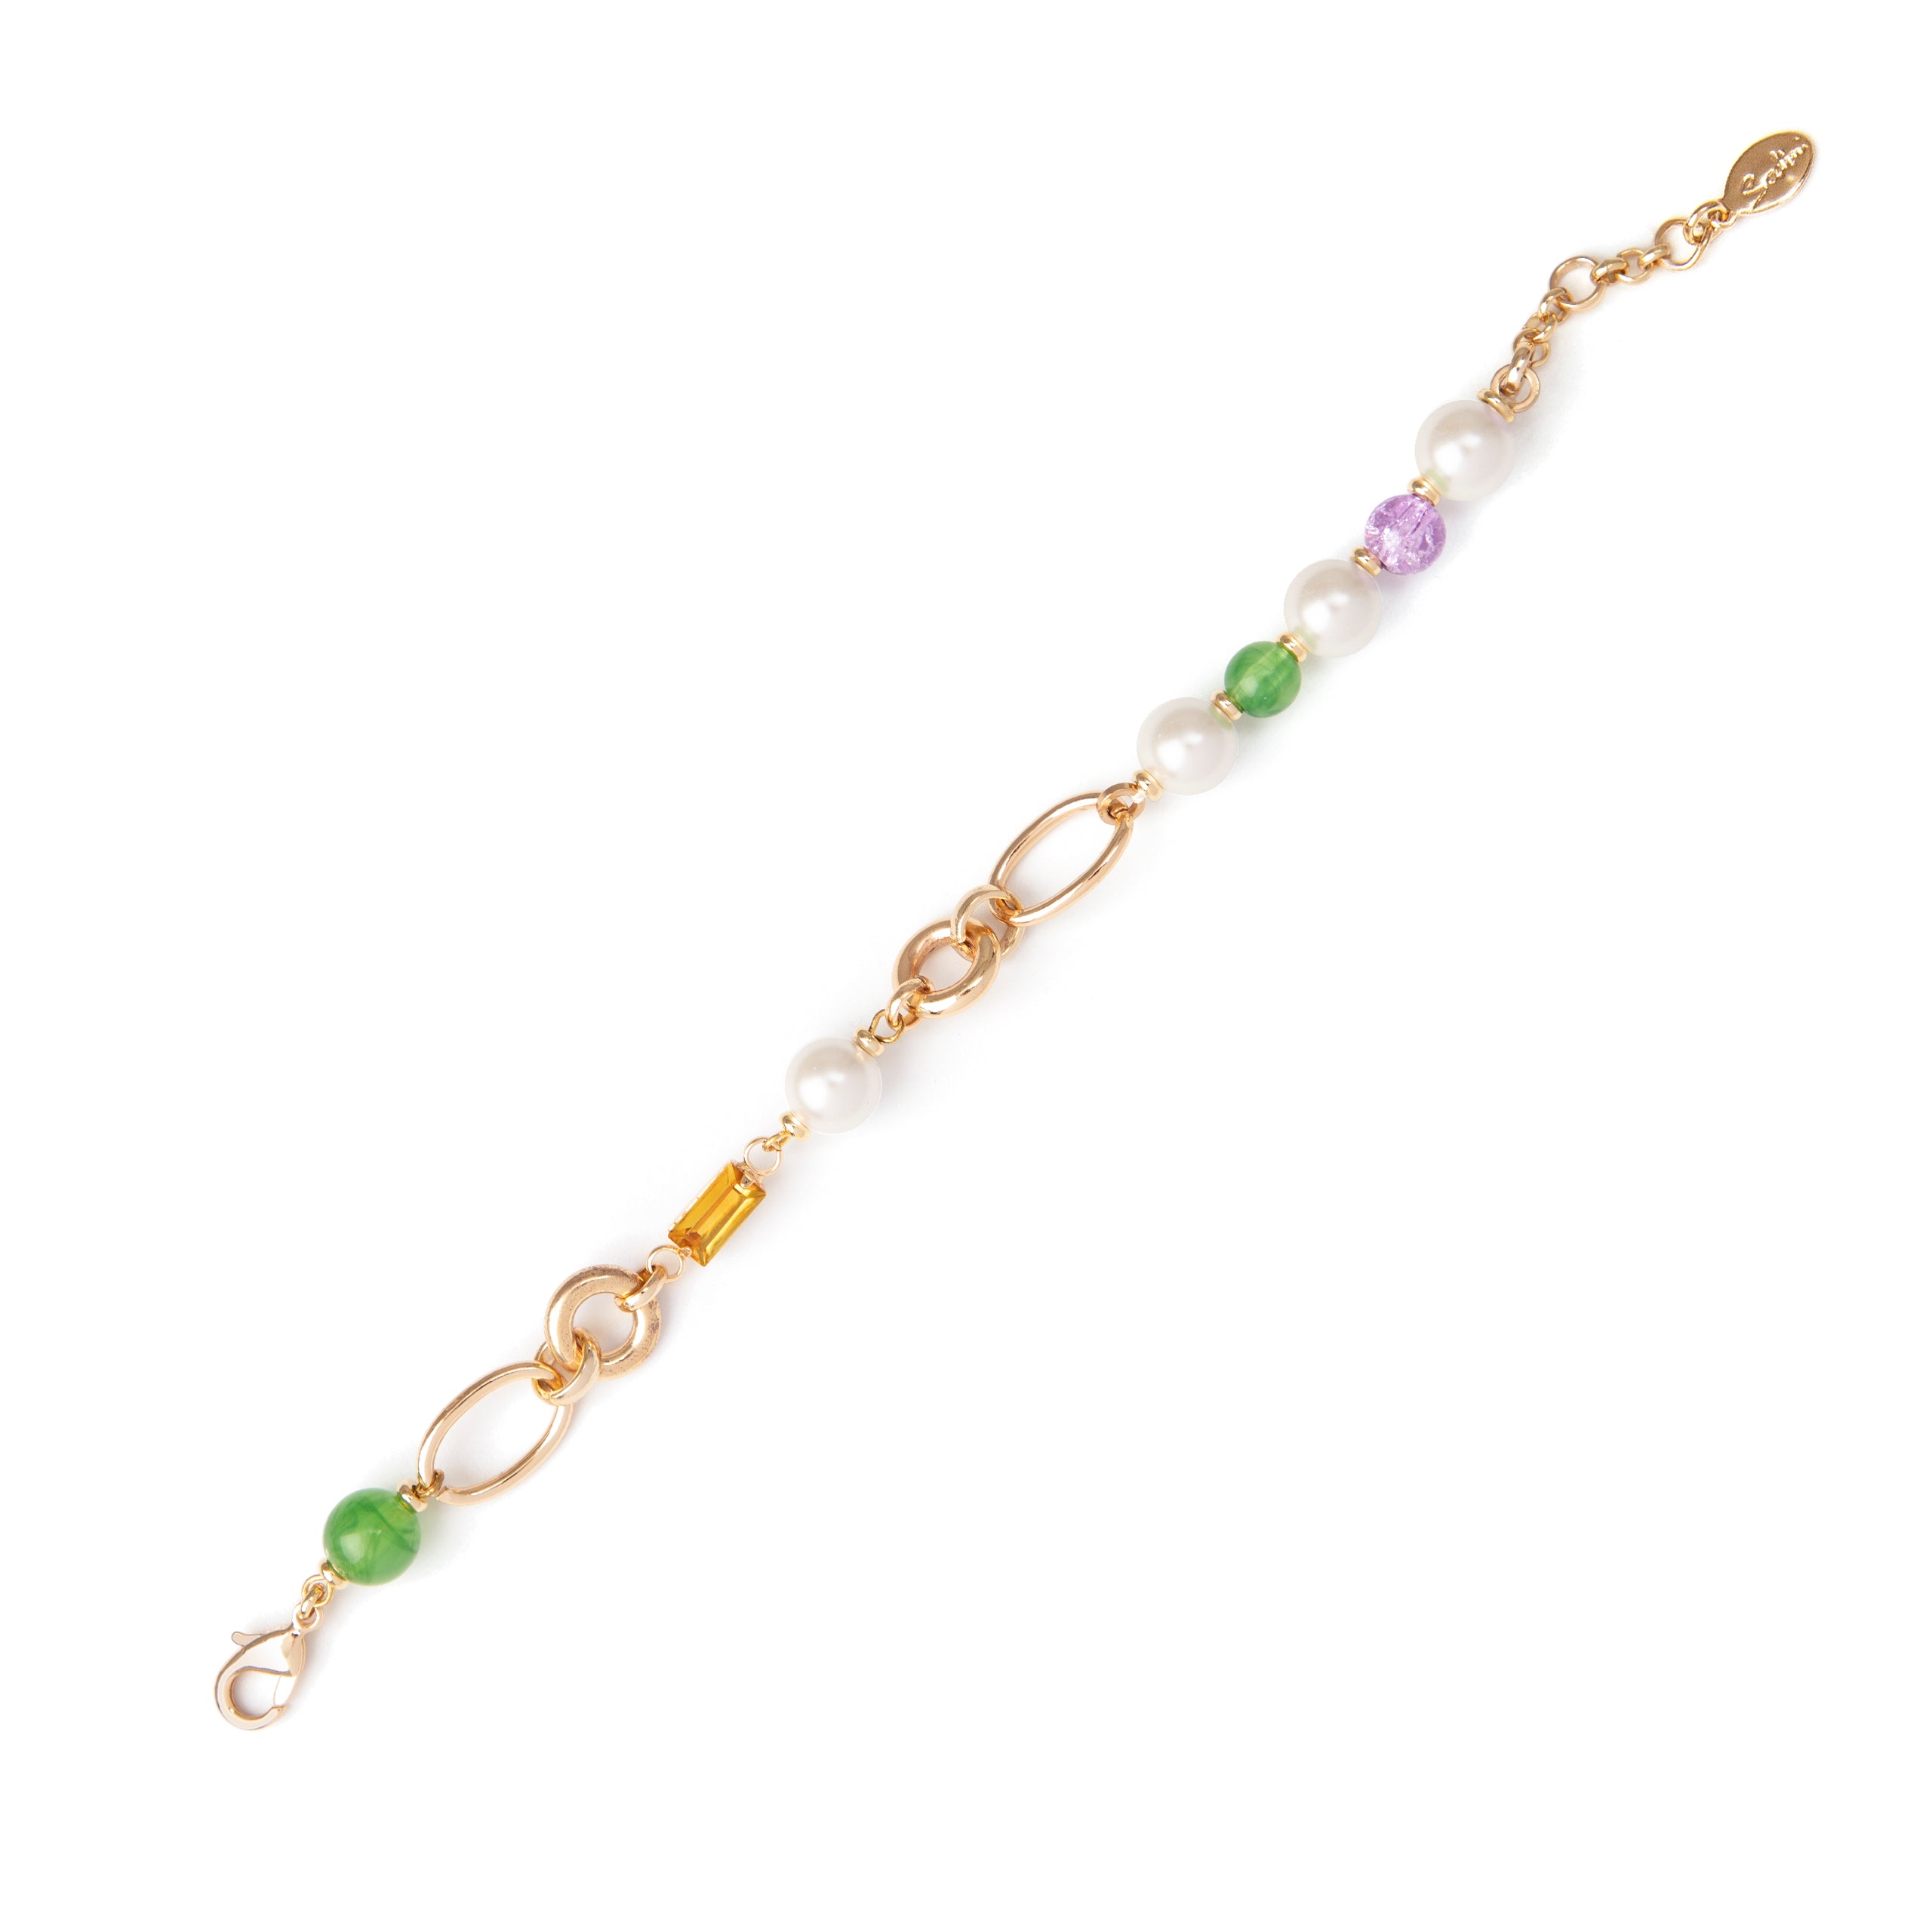 Bracciale catena e perle Rugiada - Verde e viola - Sodini Bijoux